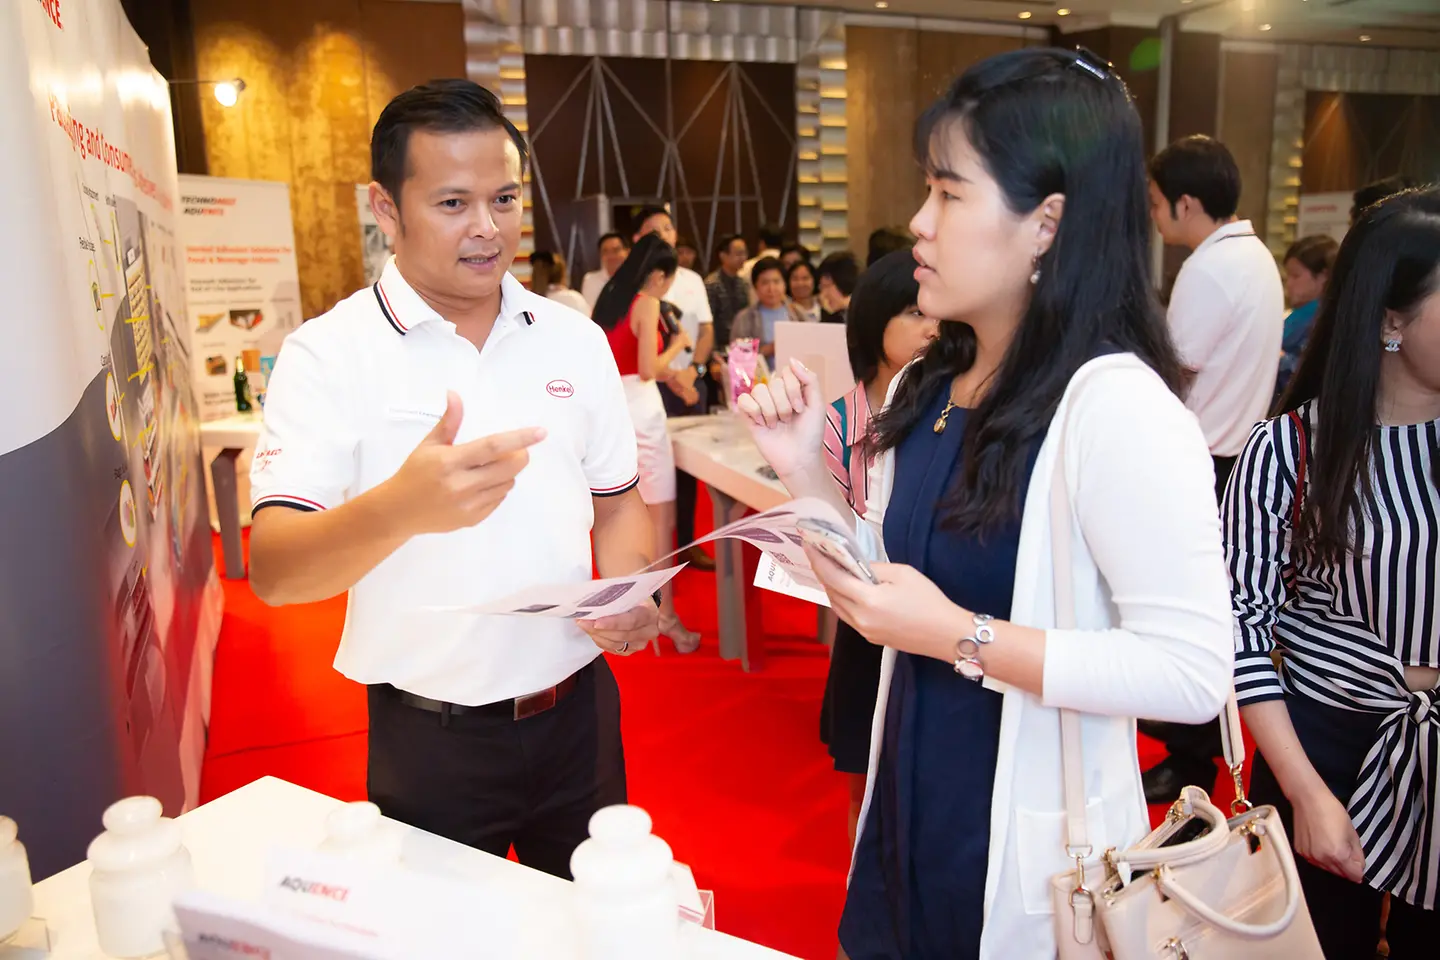 ผู้เชี่ยวชาญของเฮงเค็ล ประเทศไทย อธิบายลูกค้าเกี่ยวกับการใช้นวัตกรรมผลิตภัณฑ์กาวและโซลูชั่น ในบรรจุภัณฑ์ที่ปลอดภัยสำหรับอาหาร